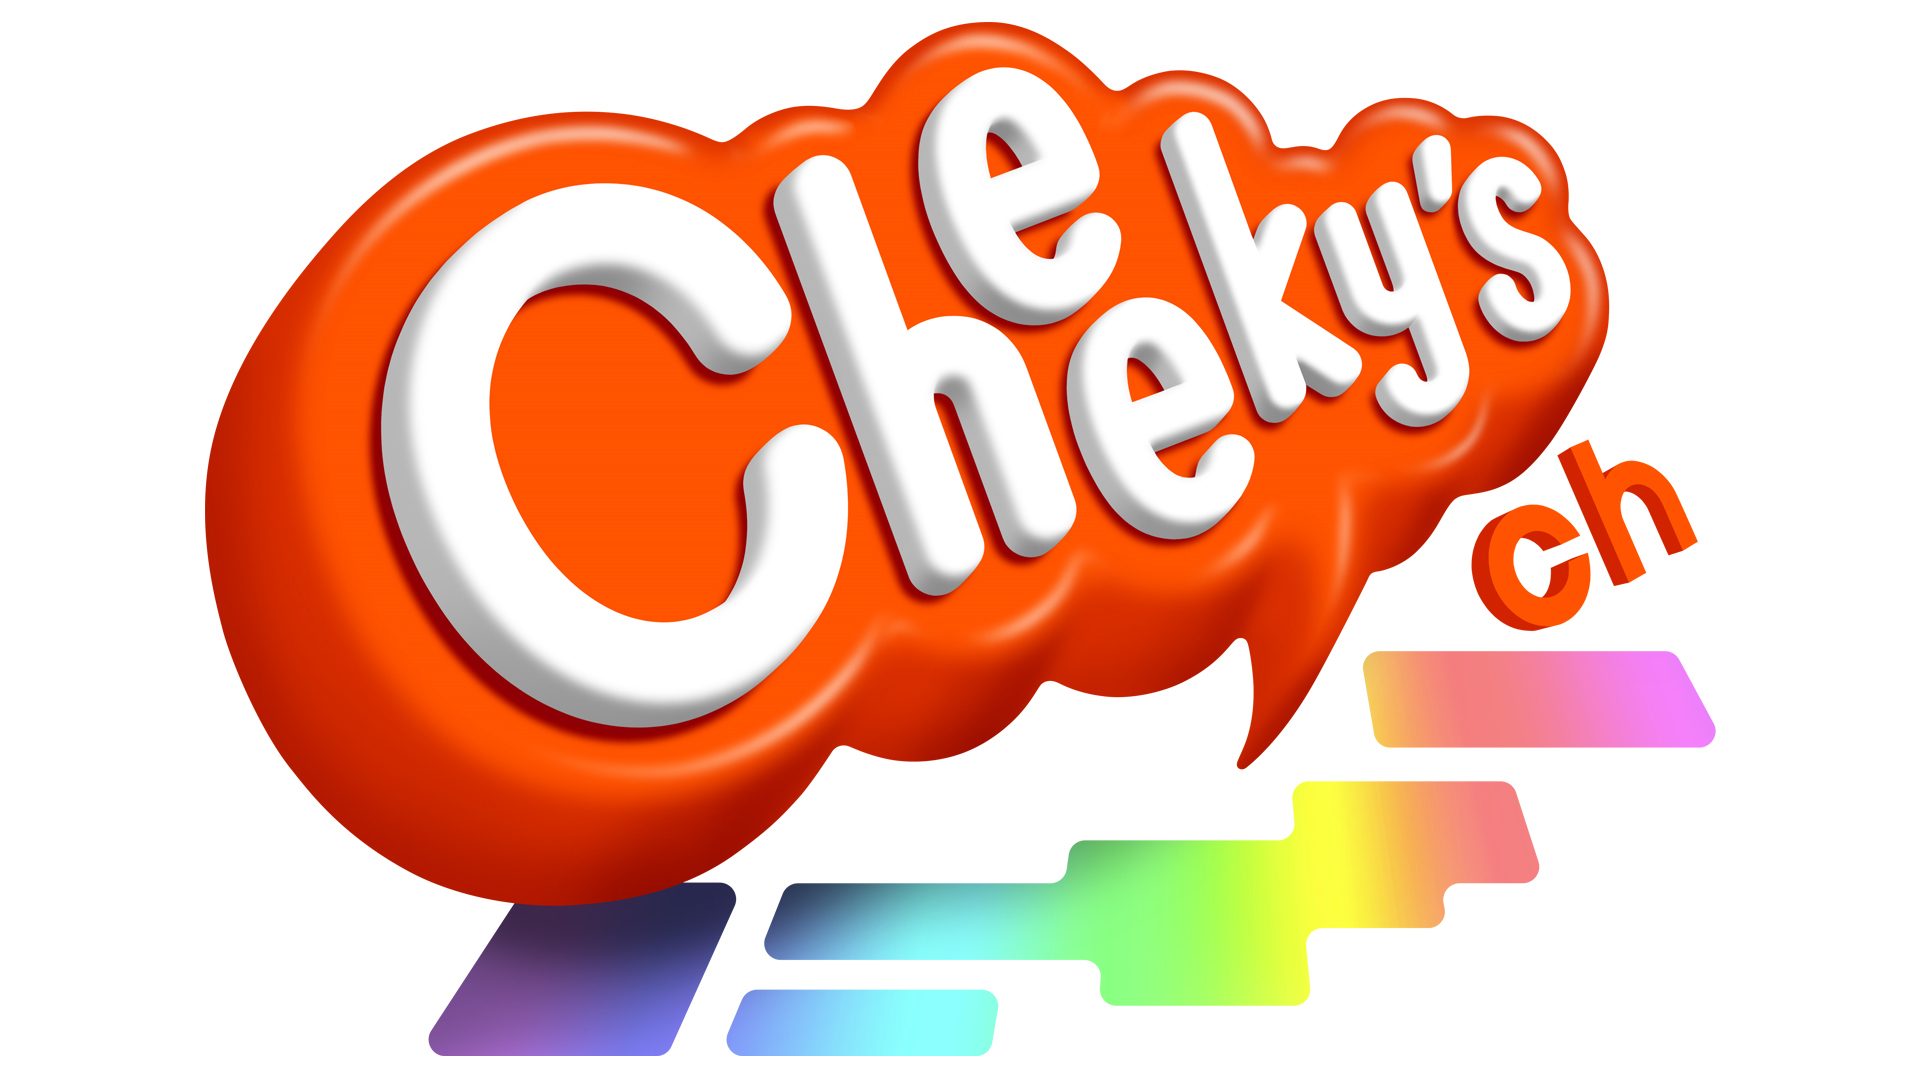 Cheeky’sチャンネル